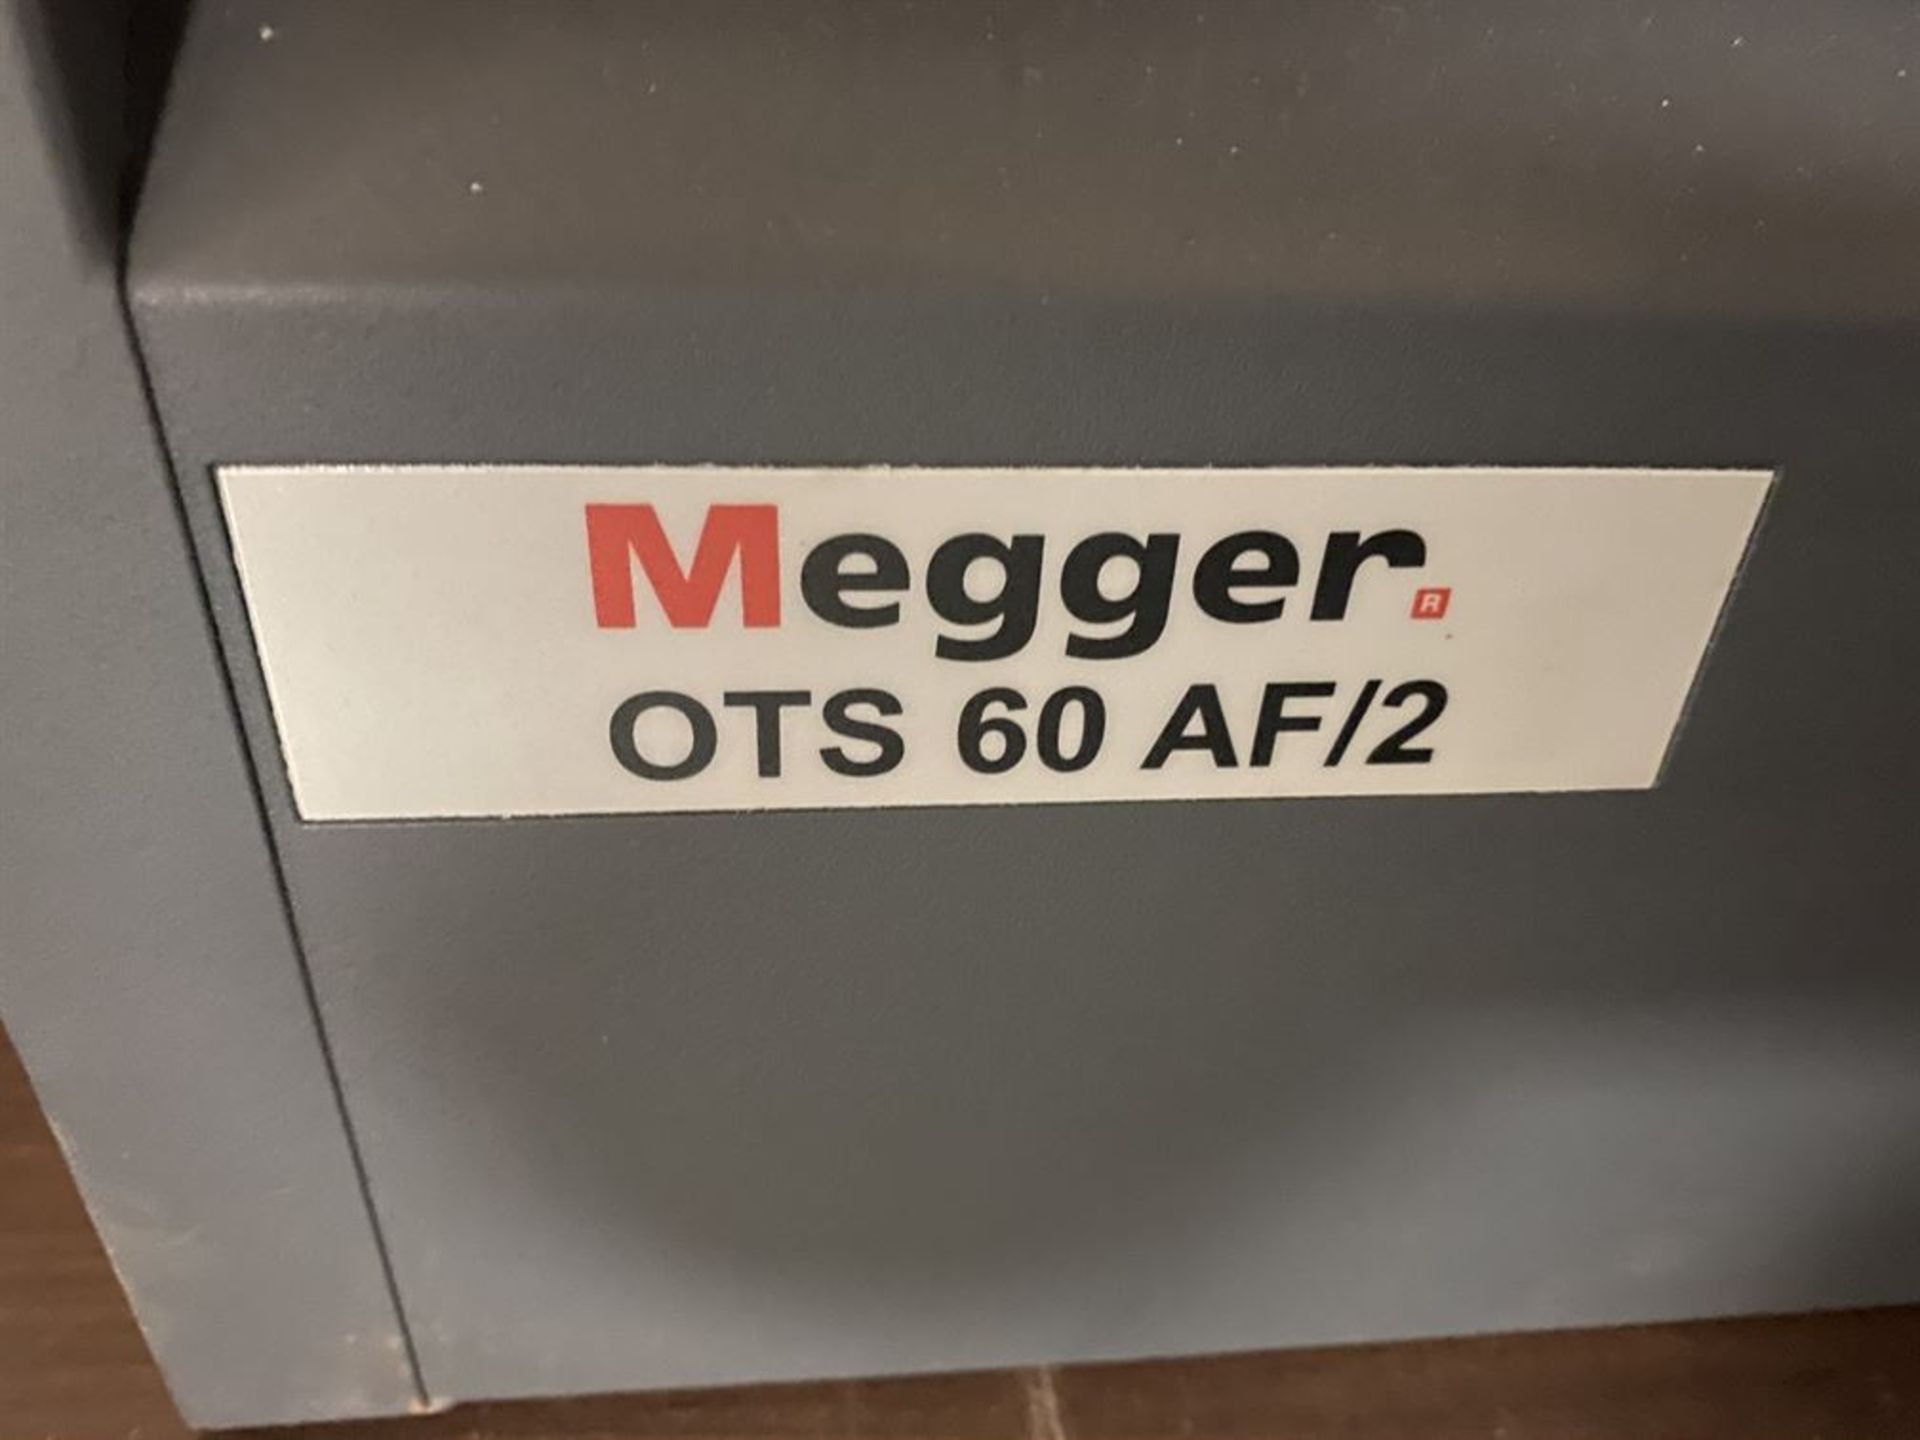 MEGGER OTS 60 AF/2 Laboratory Oil Tester (Location: Machine Shop) - Image 2 of 3